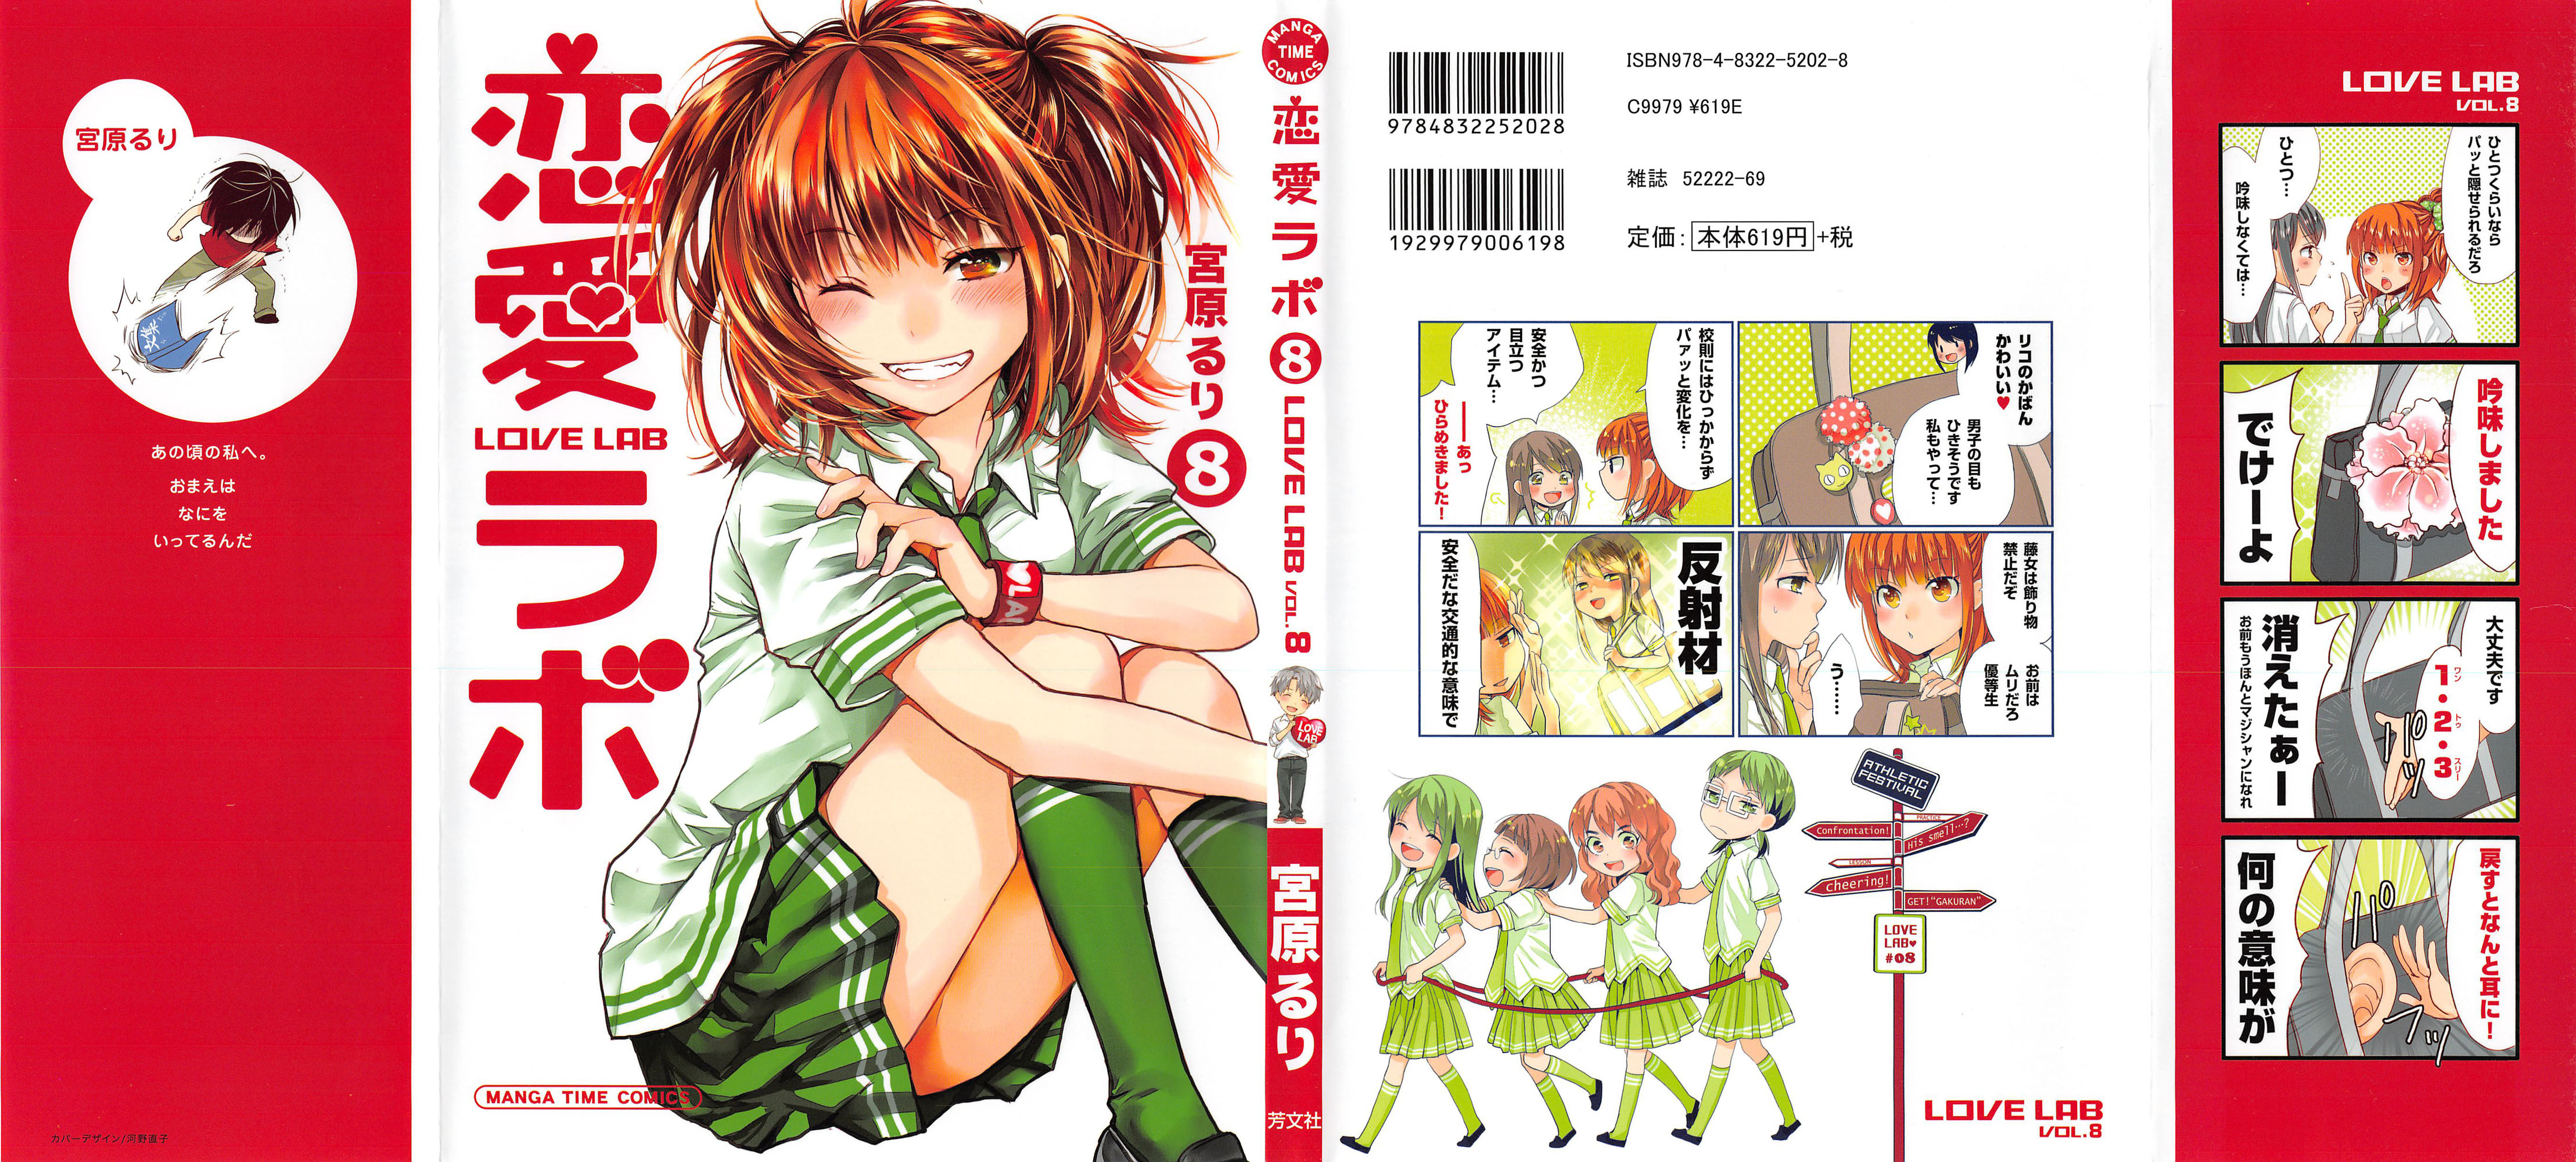 恋愛ラボ 7巻 Manga Townまんがタウン まんがまとめ 無料コミック漫画 ネタバレ